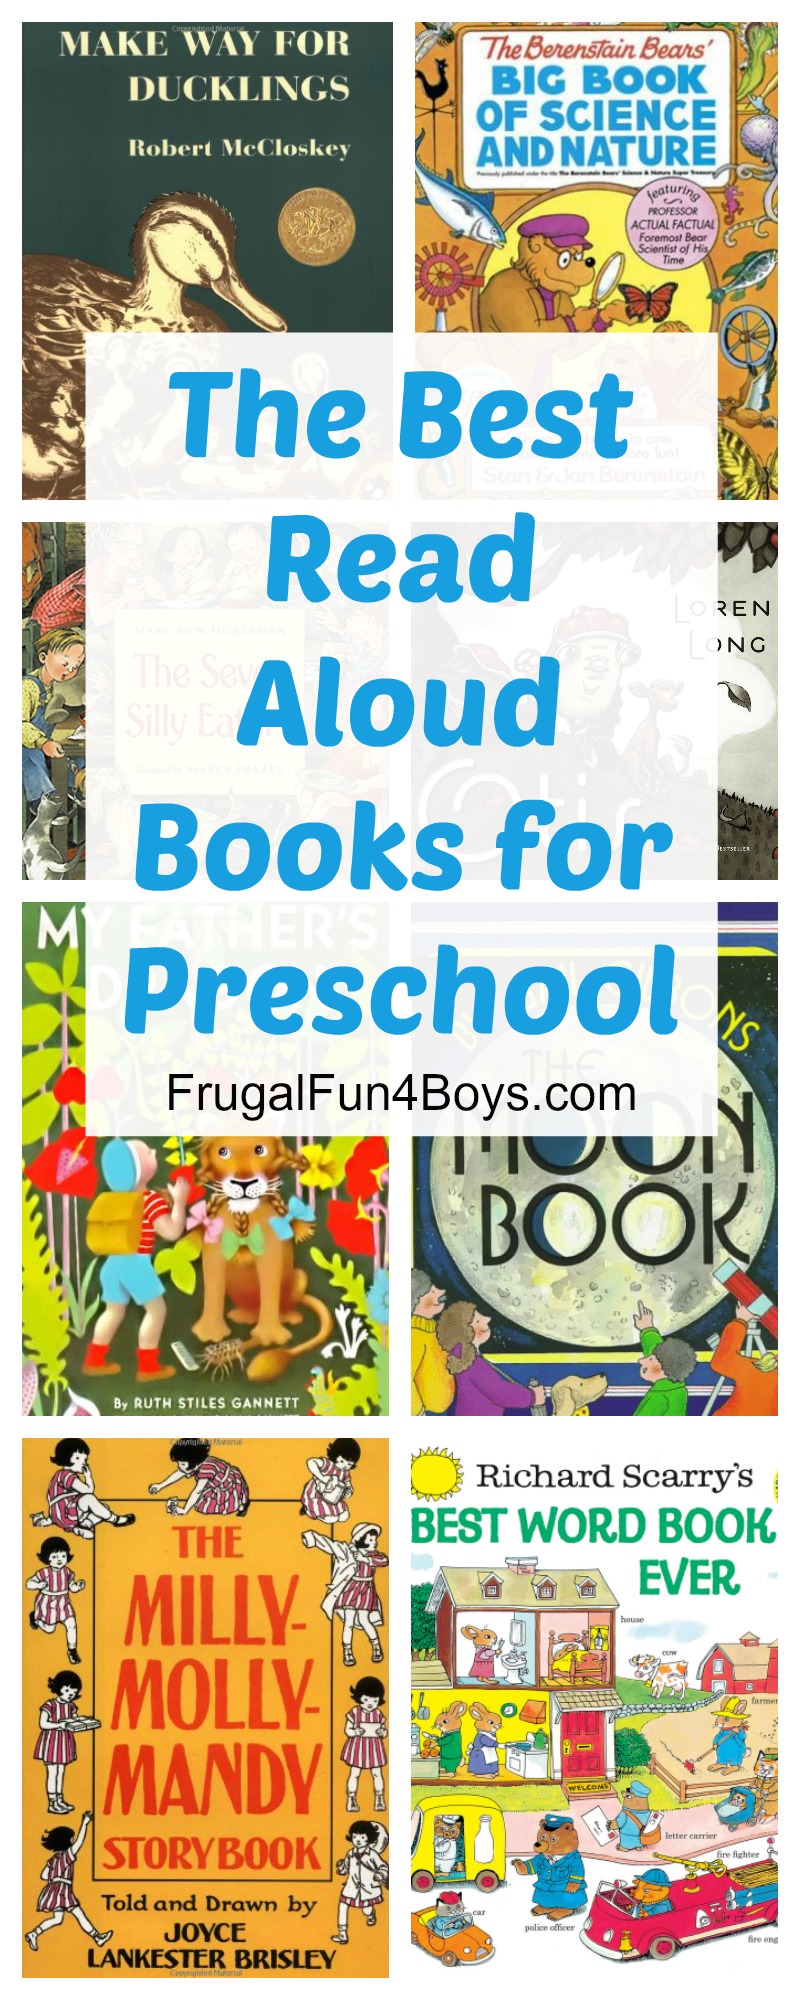 The Best Read-Aloud Books for Preschool